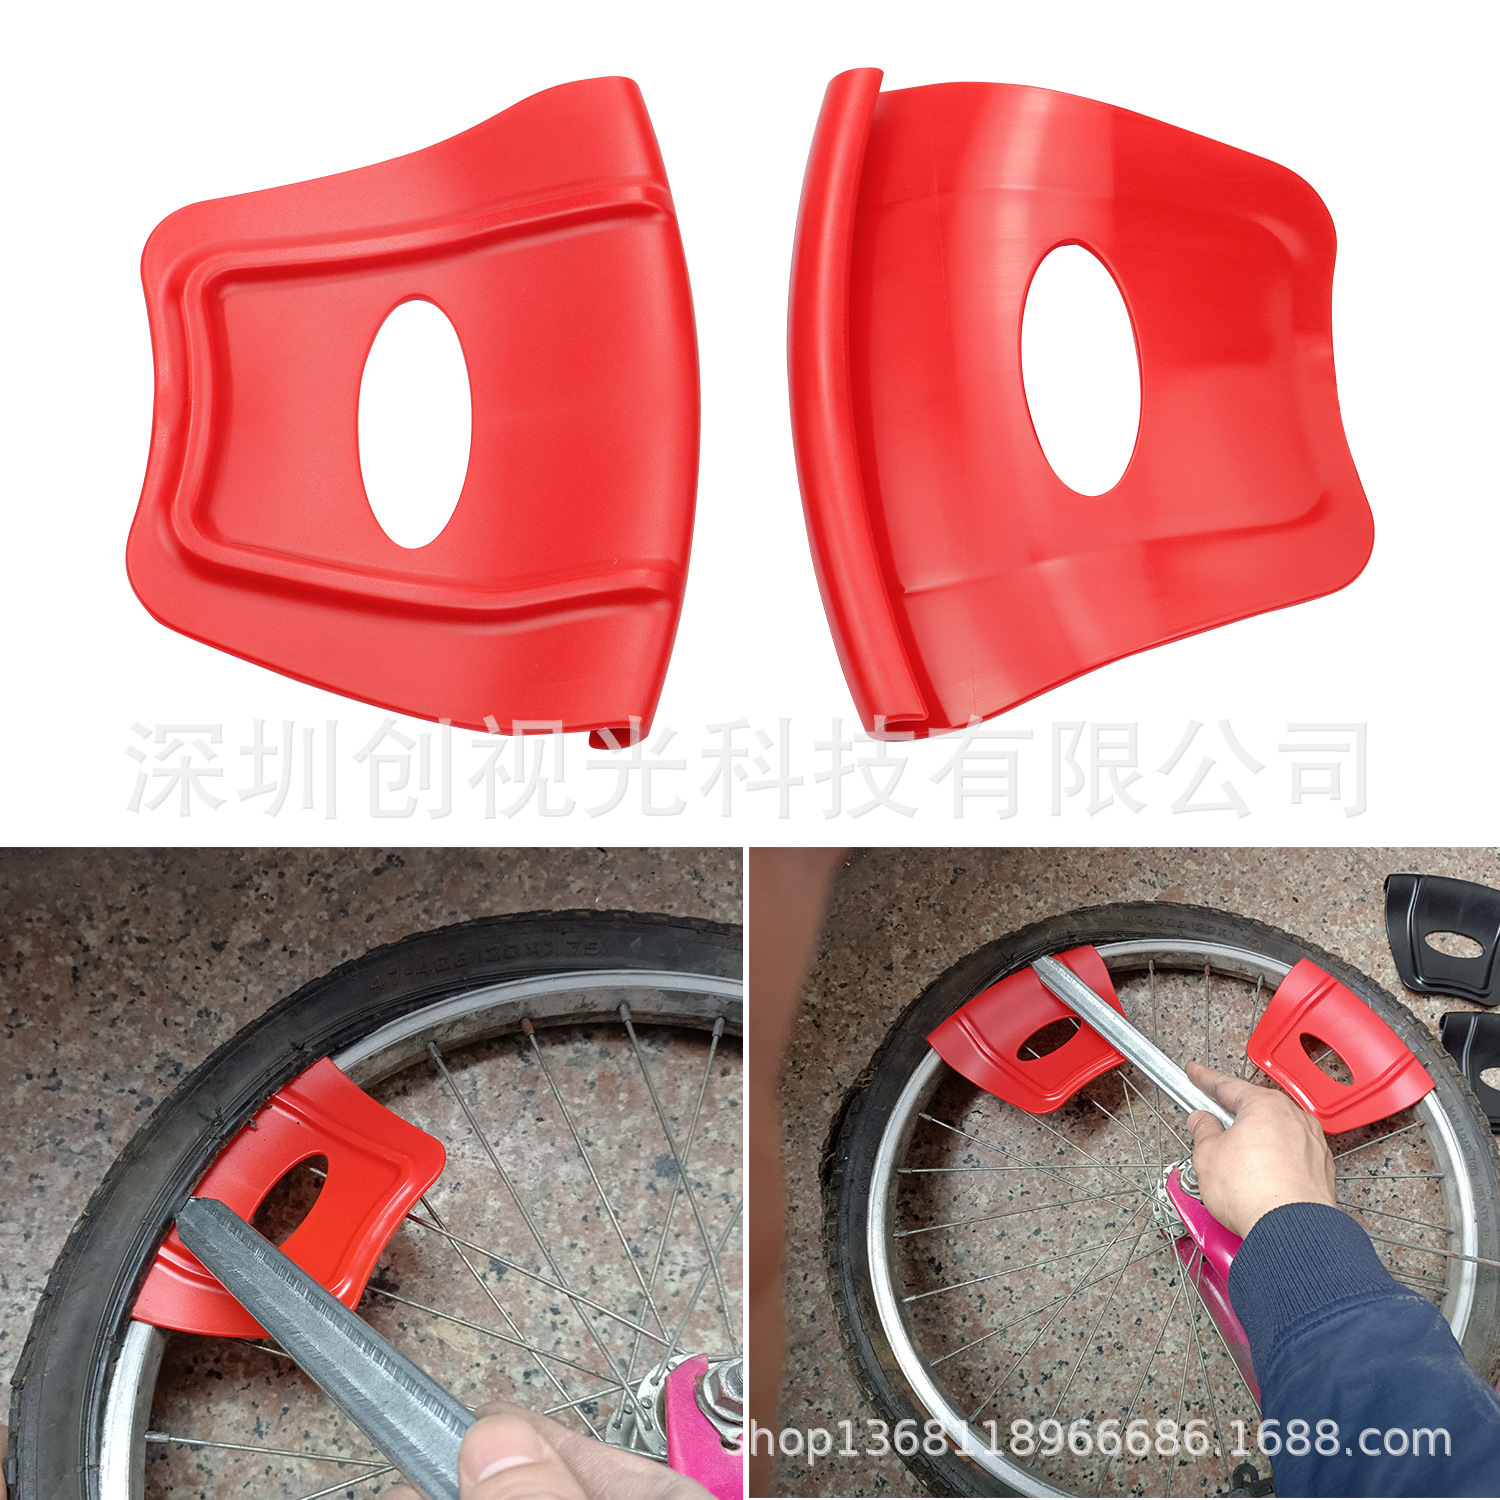 Защитная защитная маска, колесо, шины, инструмент для ремонта шин, красный мотоцикл на четырех колесах